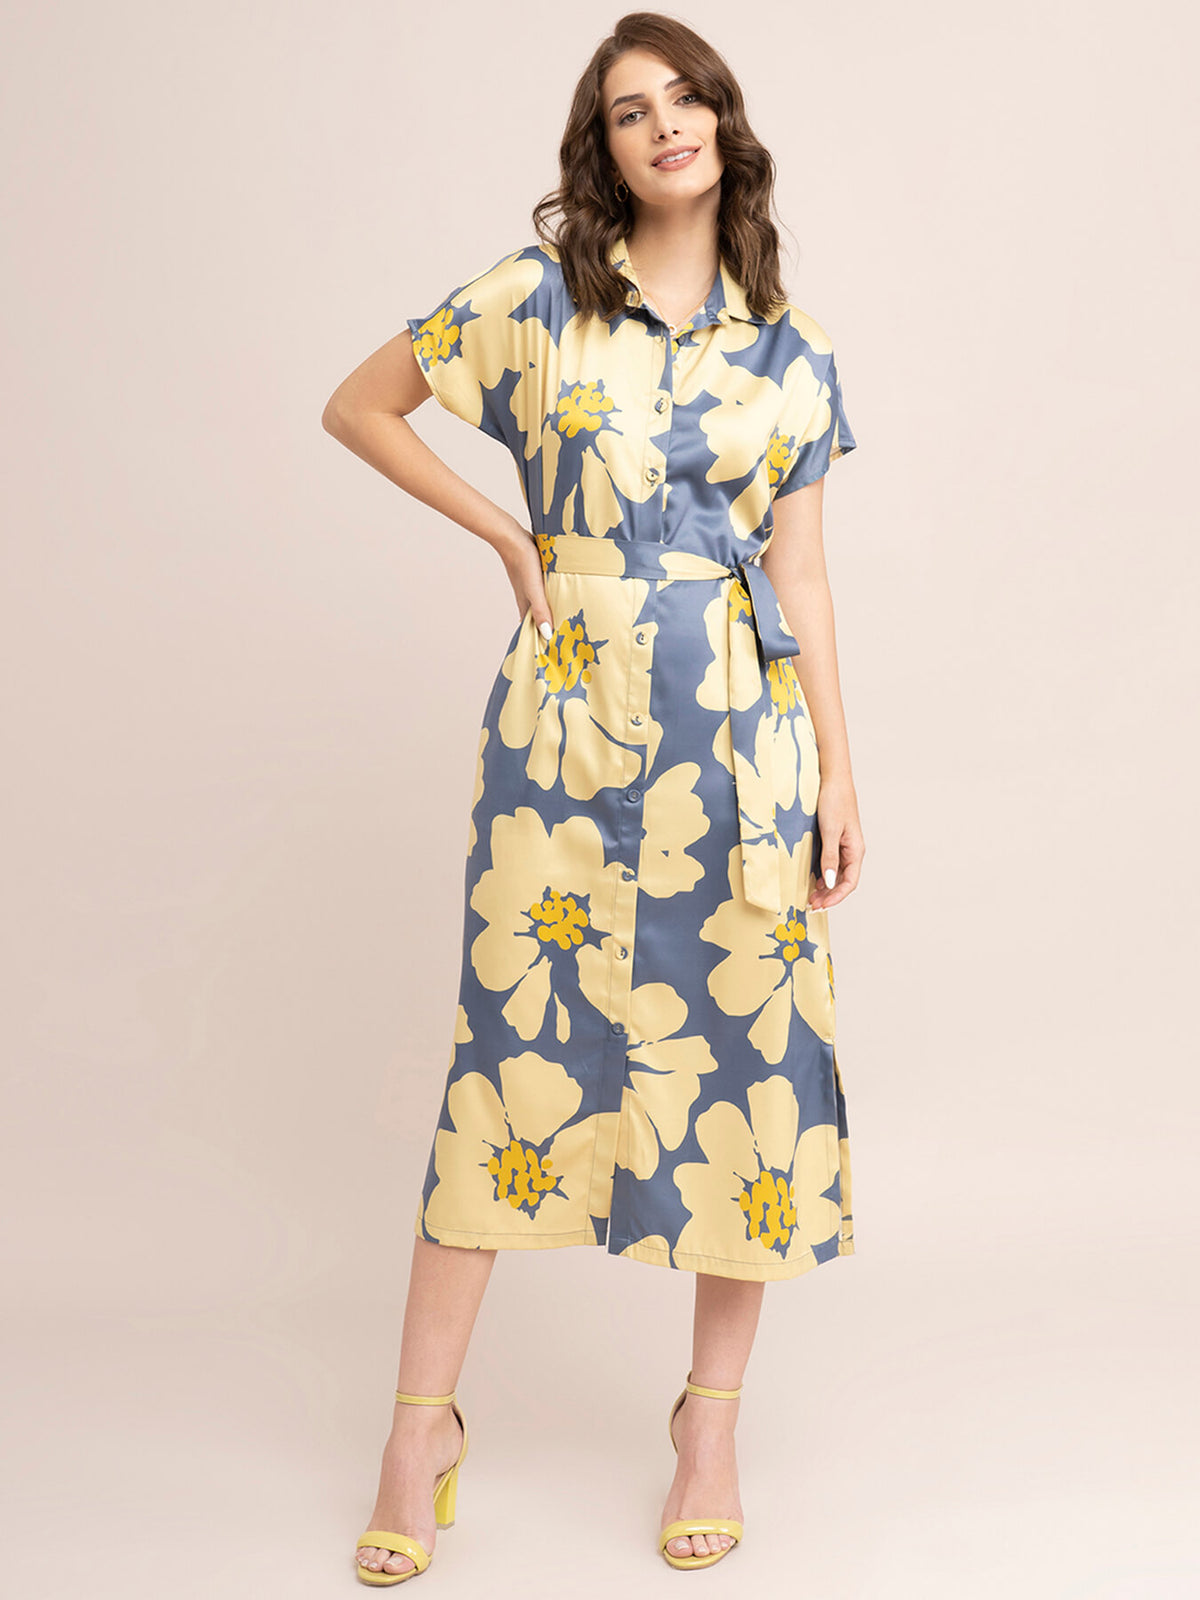 Satin Floral Print Shirt Dress - Yellow And Grey